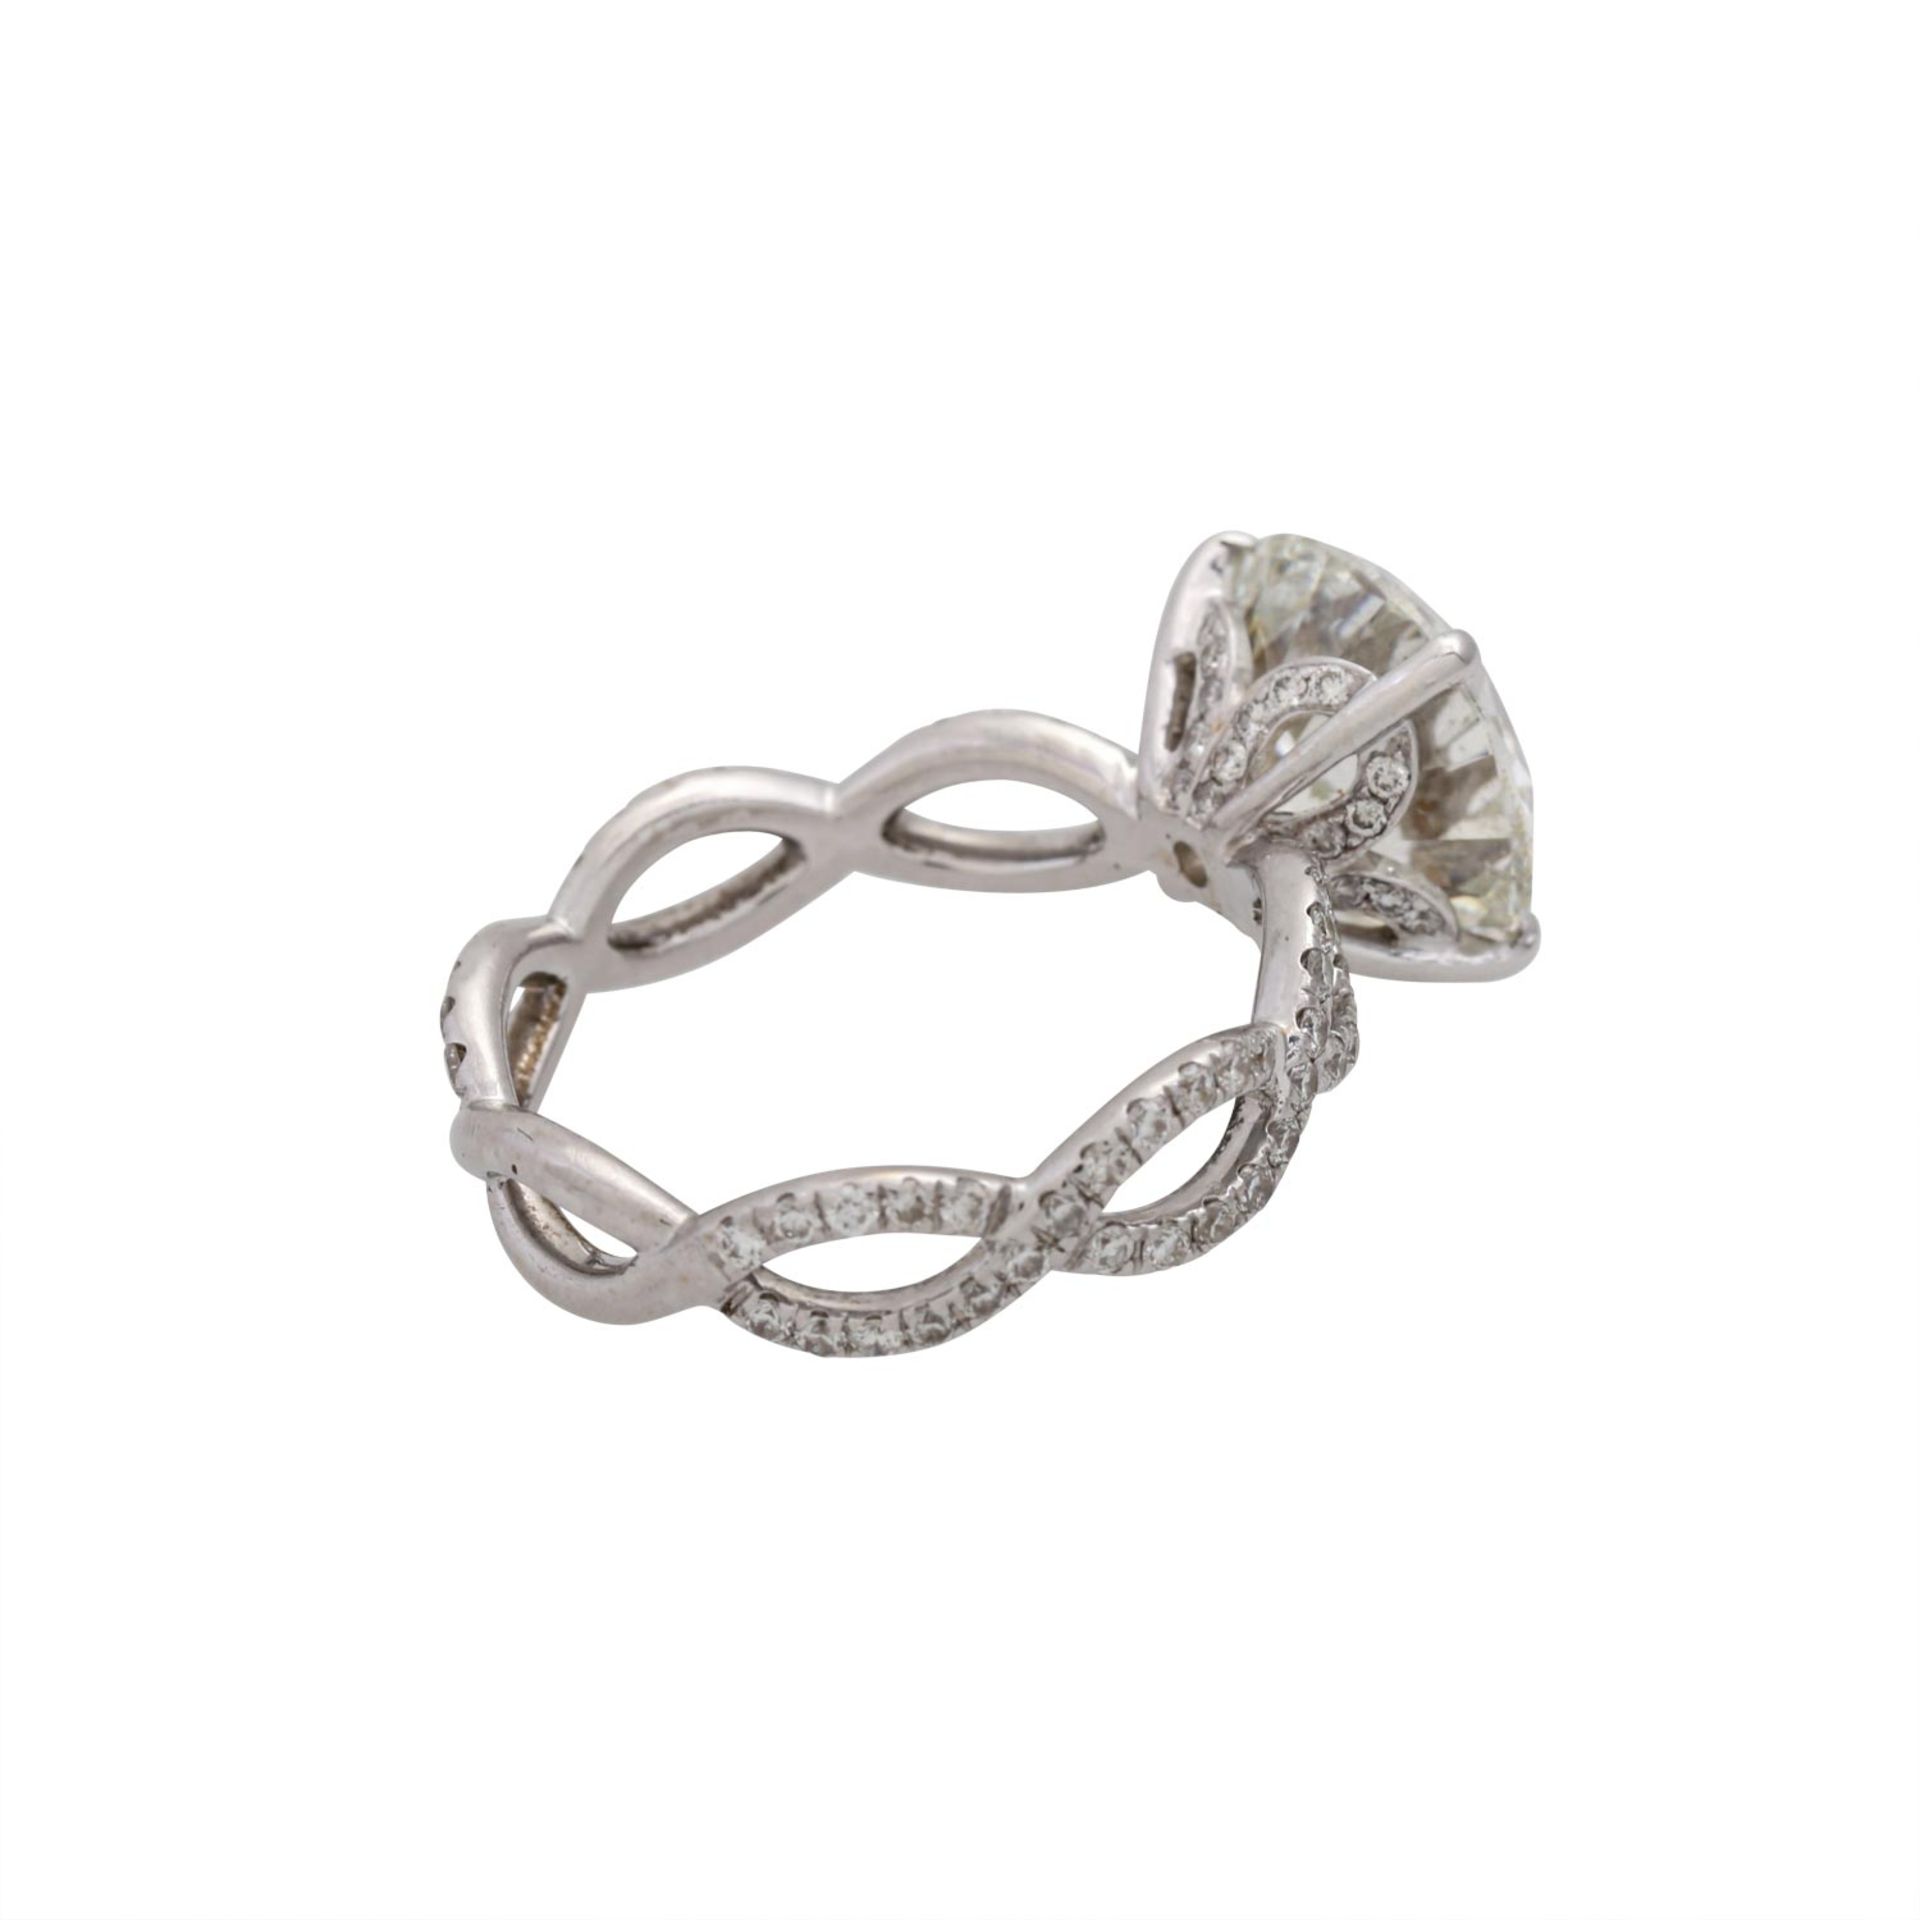 Ring mit Brillant von 5,00 ct,LGW (I)/P1, ex/ex/ex, weitere kleine Diamanten zus. ca. - Bild 3 aus 9